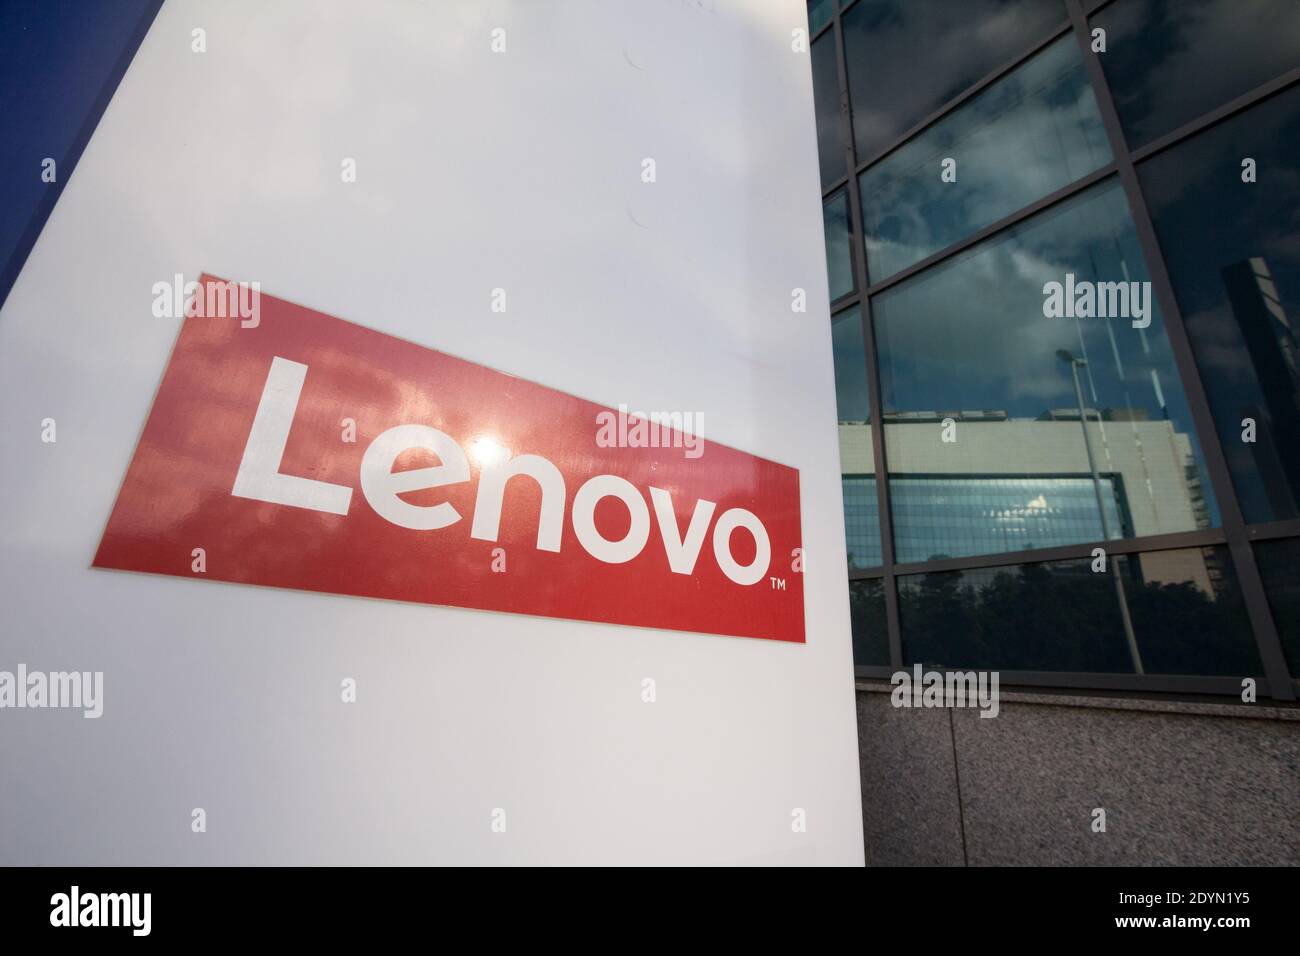 BELGRADE, SERBIE - 31 MAI 2020 : panneau Lenovo sur leur siège et bureau principal de Belgrade. Lenovo est une société chinoise spécialisée dans la haute technologie Banque D'Images